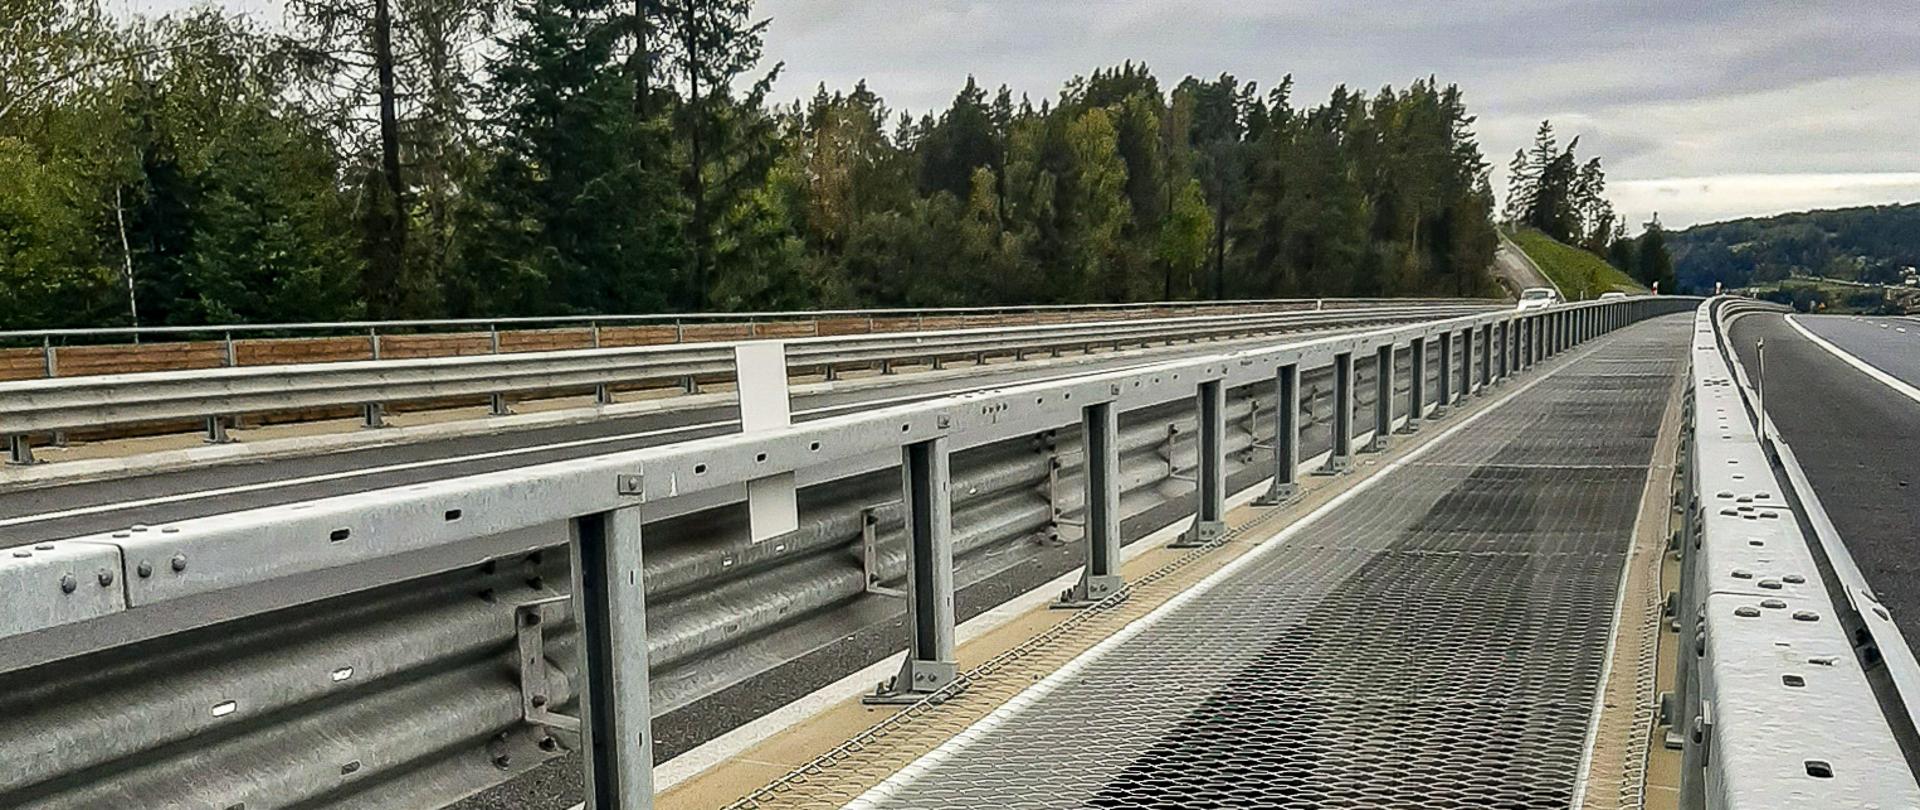 Fotografia z poziomu terenu obrazująca zabezpieczenie siatką prześwitów pomiędzy równolegle zlokalizowanymi objatami mostowymi w ciągu drogi ekspresowej. 